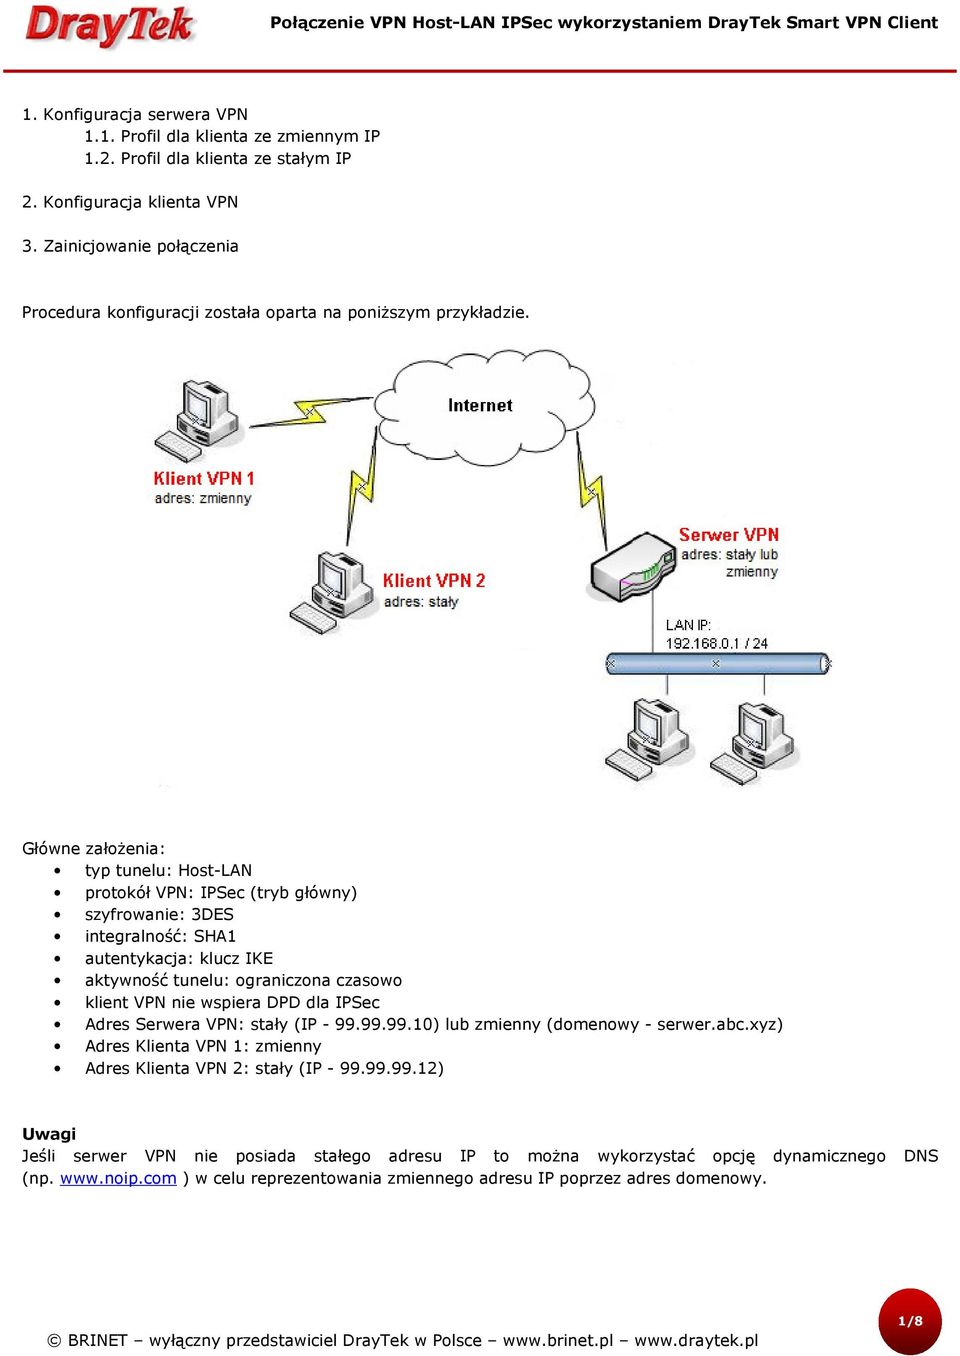 Główne założenia: typ tunelu: Host-LAN protokół VPN: IPSec (tryb główny) szyfrowanie: 3DES integralność: SHA1 autentykacja: klucz IKE aktywność tunelu: ograniczona czasowo klient VPN nie wspiera